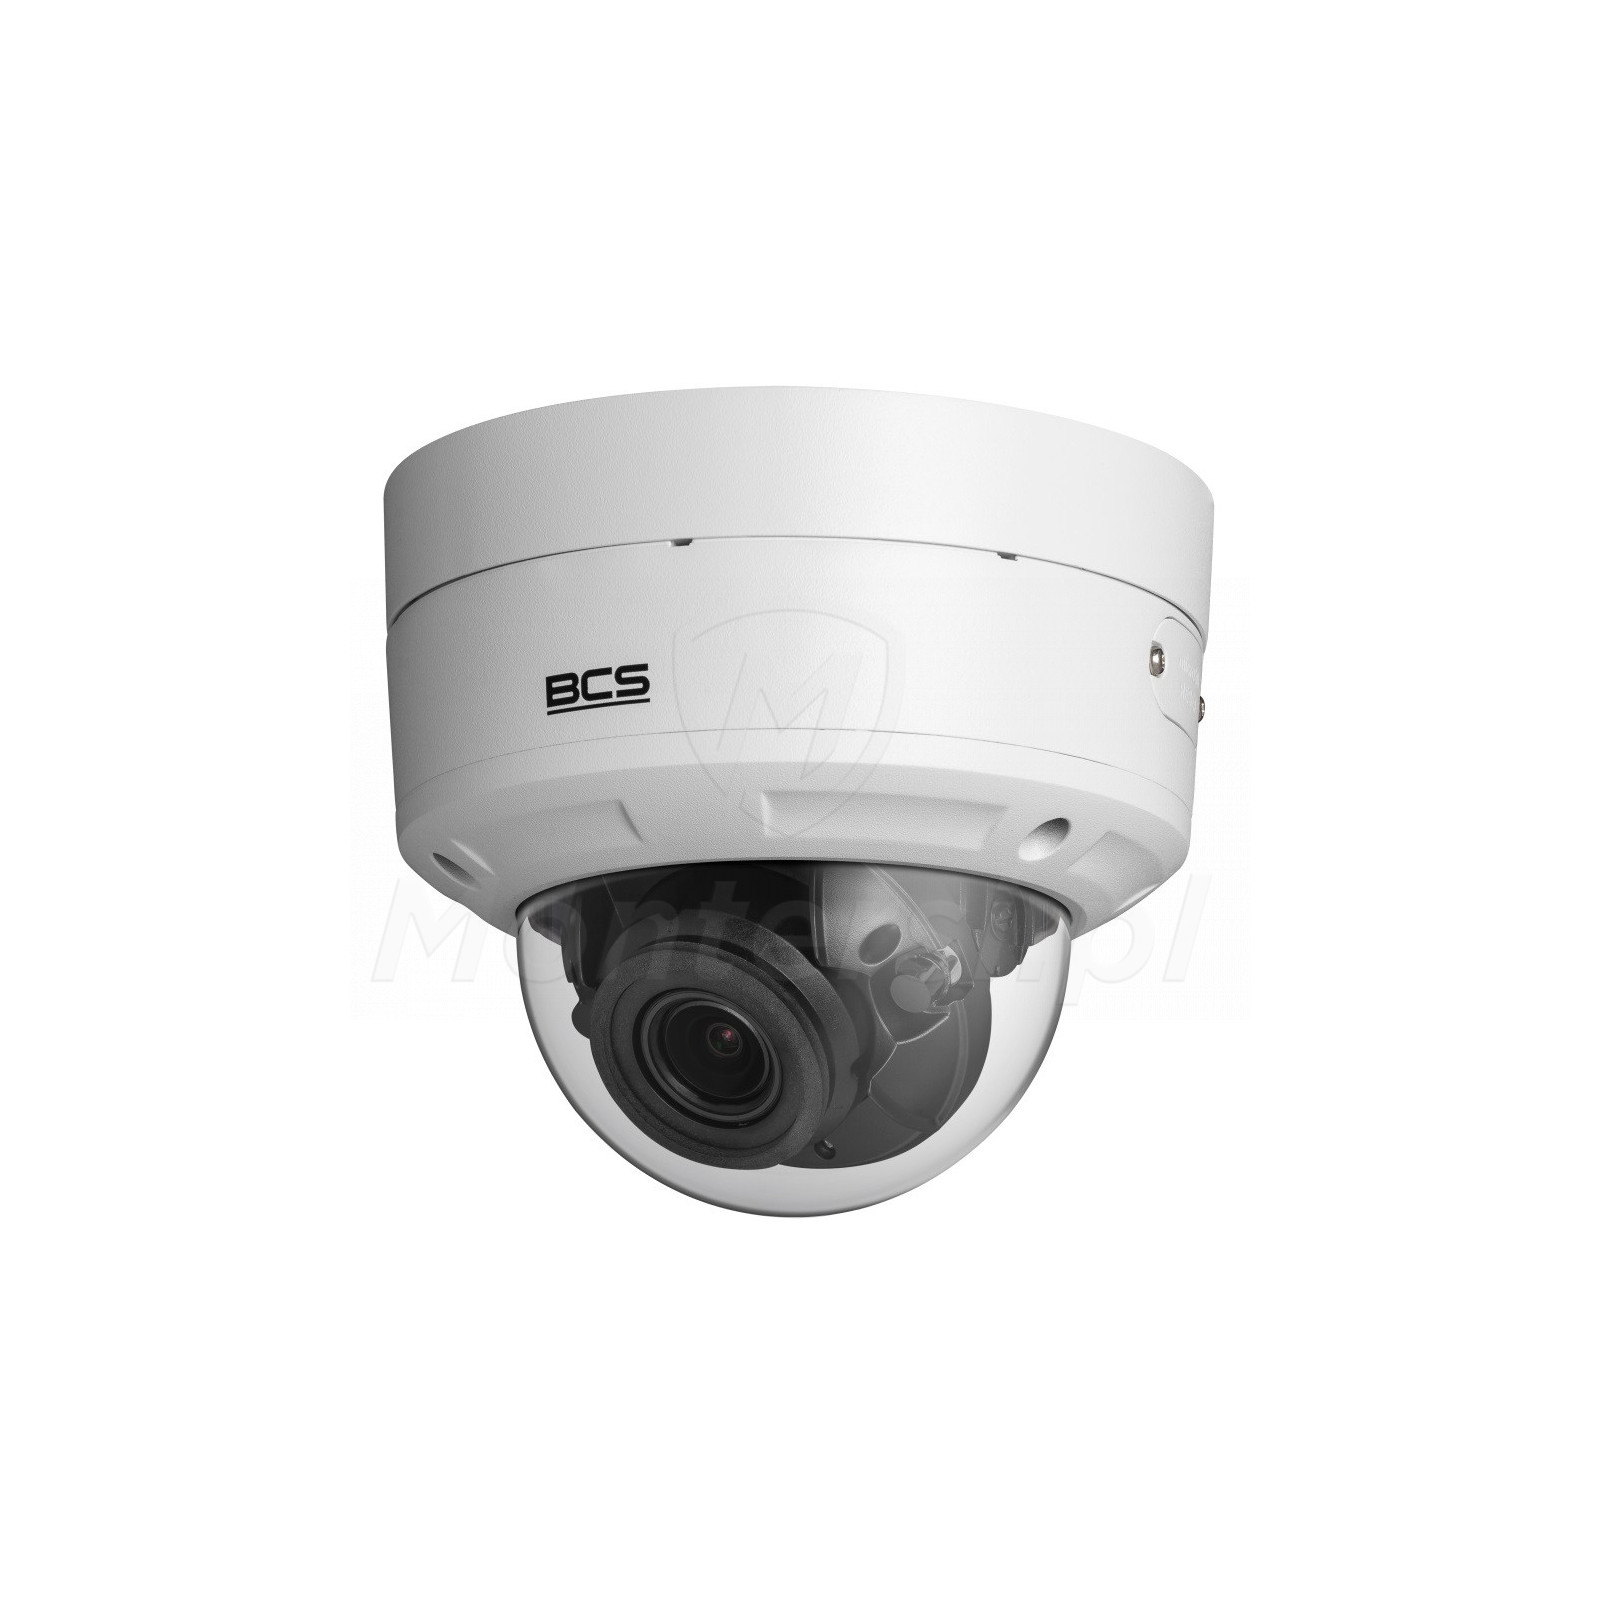 Wandaloodporna kamera IP BCS-V-DIP58VSR4-Ai2